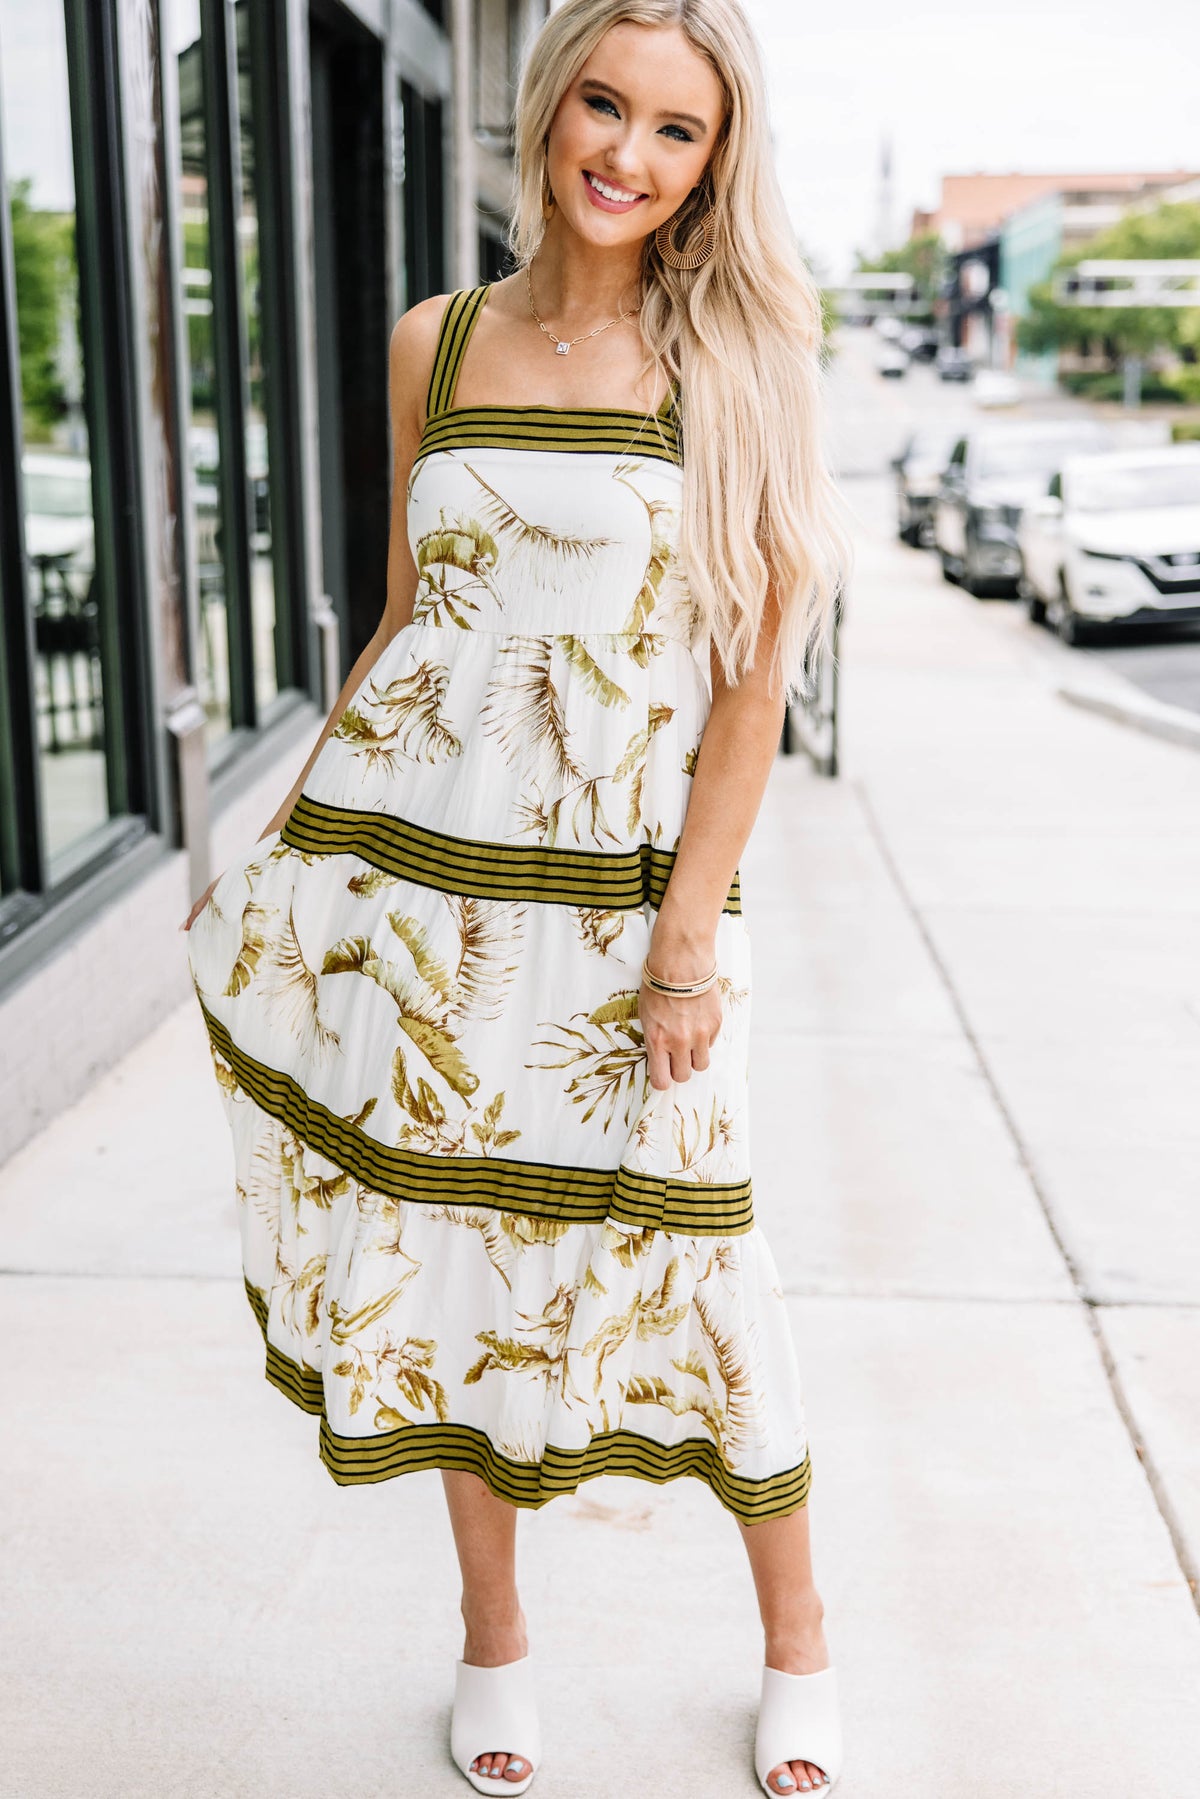 Cute Green Floral Midi Dress - Trendy Midi Dresses – Shop the Mint